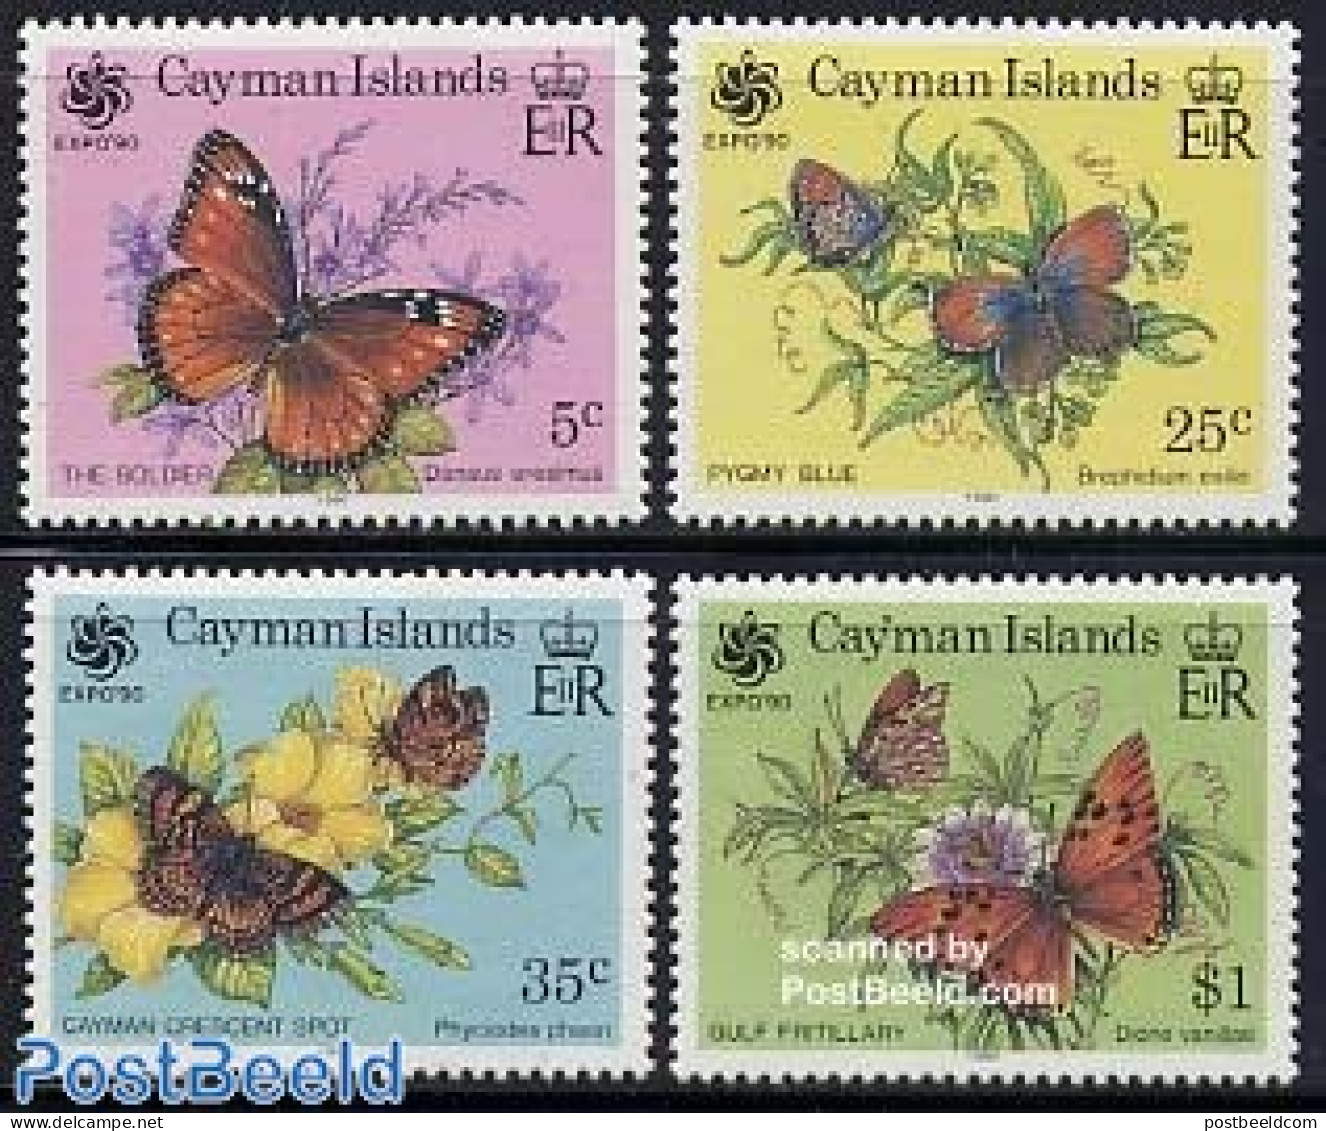 Cayman Islands 1990 Expo, Butterflies 4v, Mint NH, Nature - Butterflies - Kaimaninseln